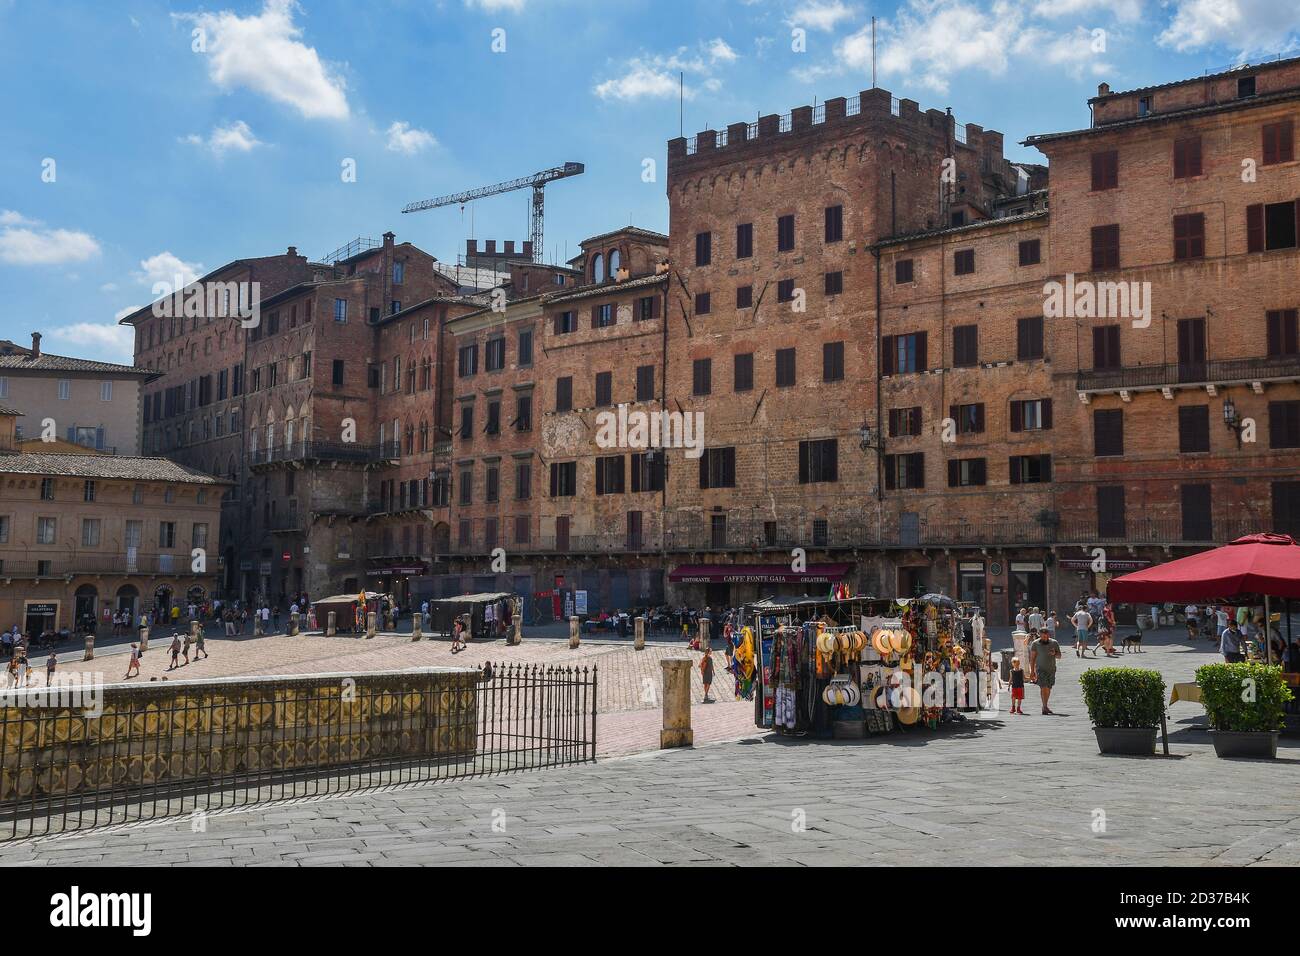 Vue sur la Piazza del Campo, place où se déroule le célèbre Palio, dans le centre historique de Sienne, site classé au patrimoine mondial de l'UNESCO, Toscane, Italie Banque D'Images